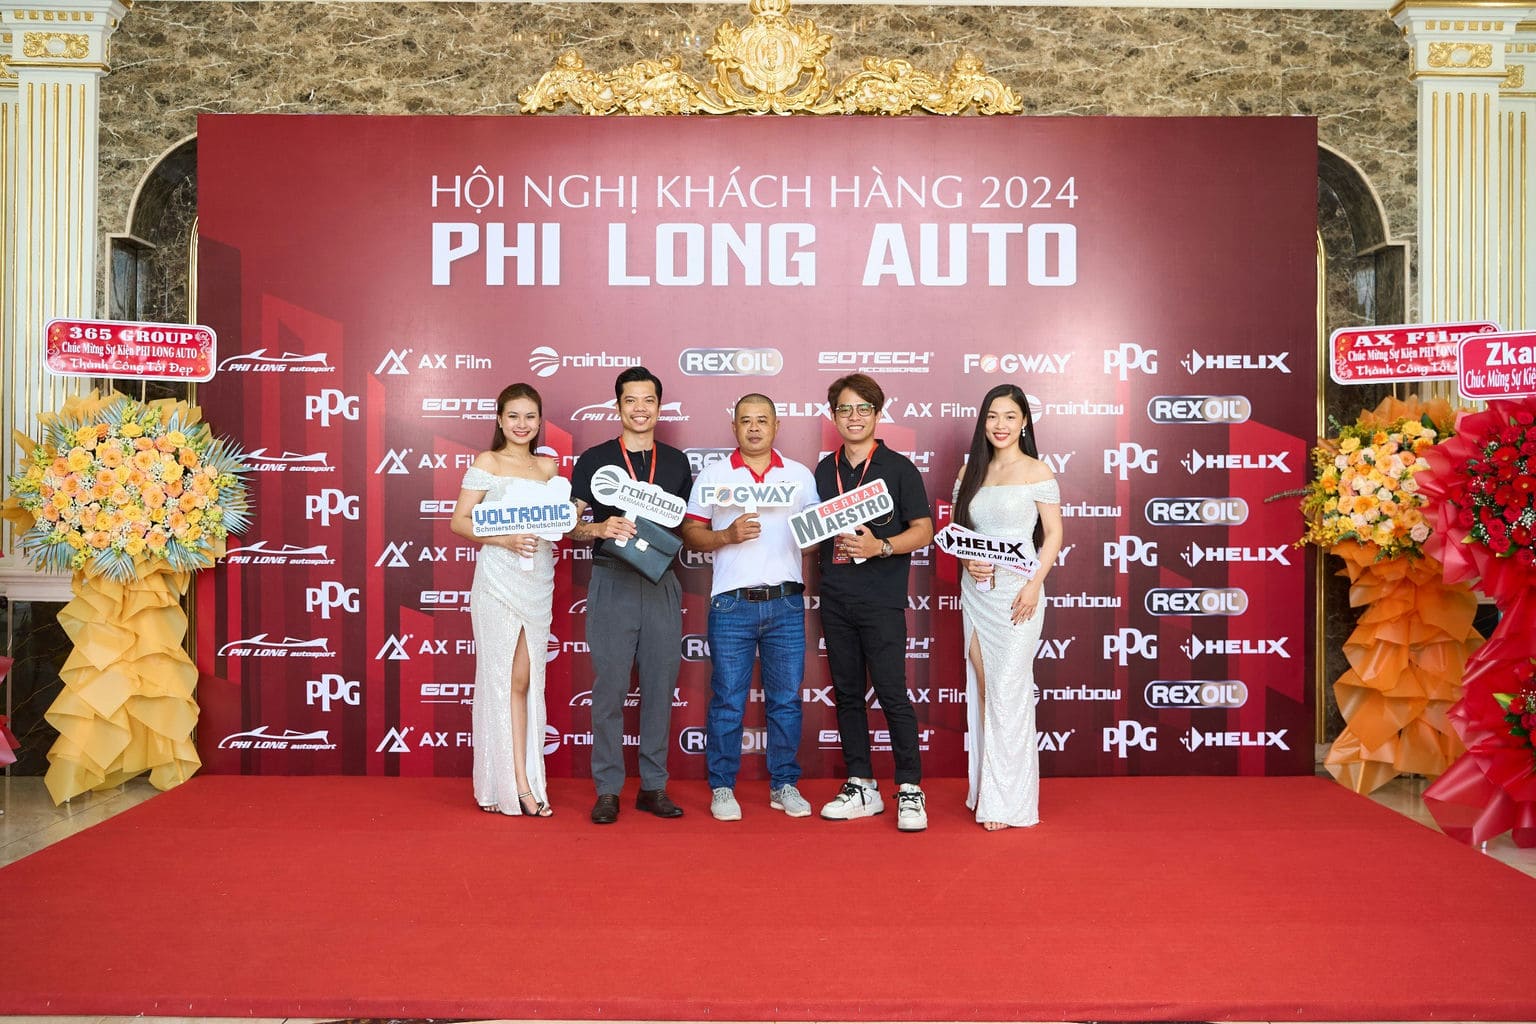 HOI NGHI KHACH HANG PHI LONG AUTO 2024 34 | Phi Long Auto